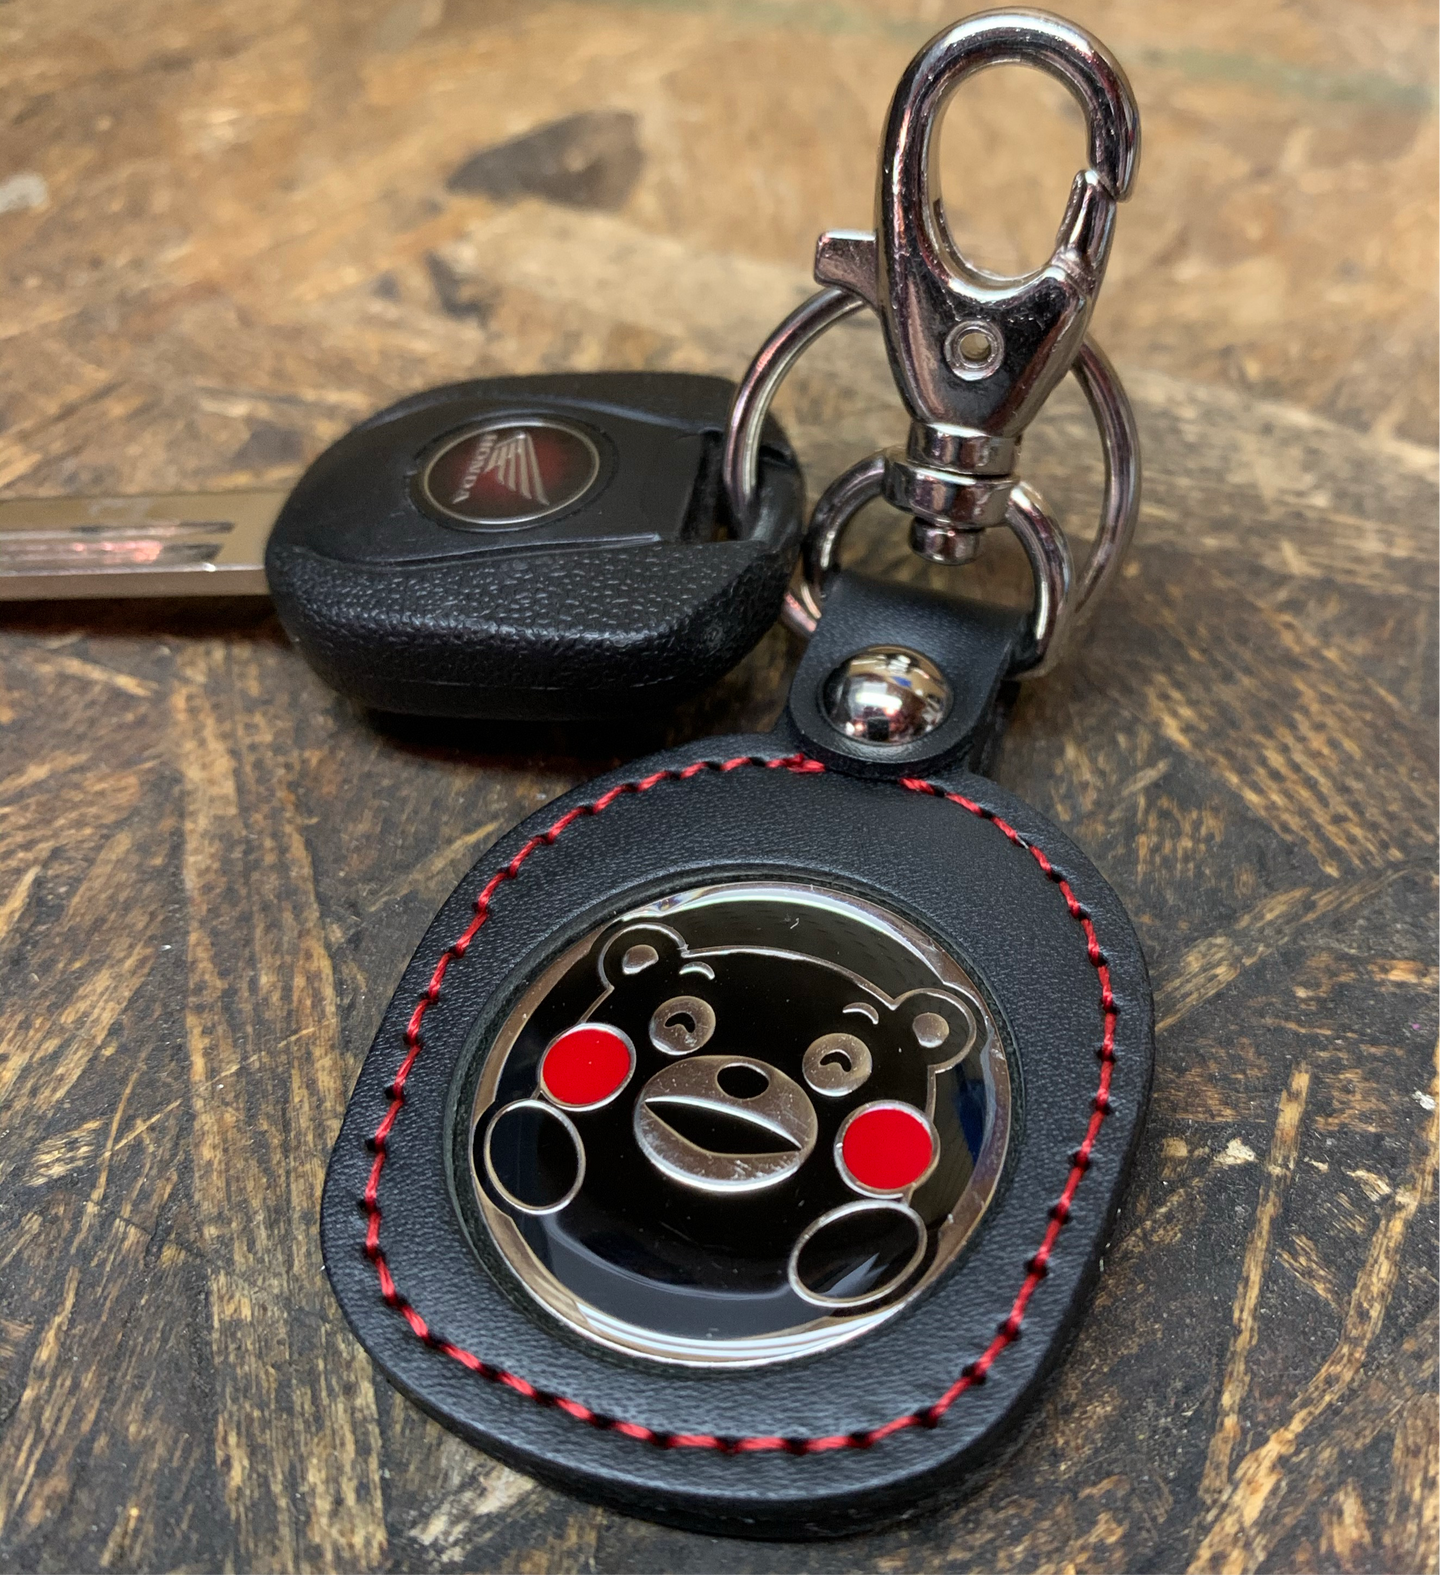 Genuine Honda Kumamon Cub Keychain Key Holder Japan